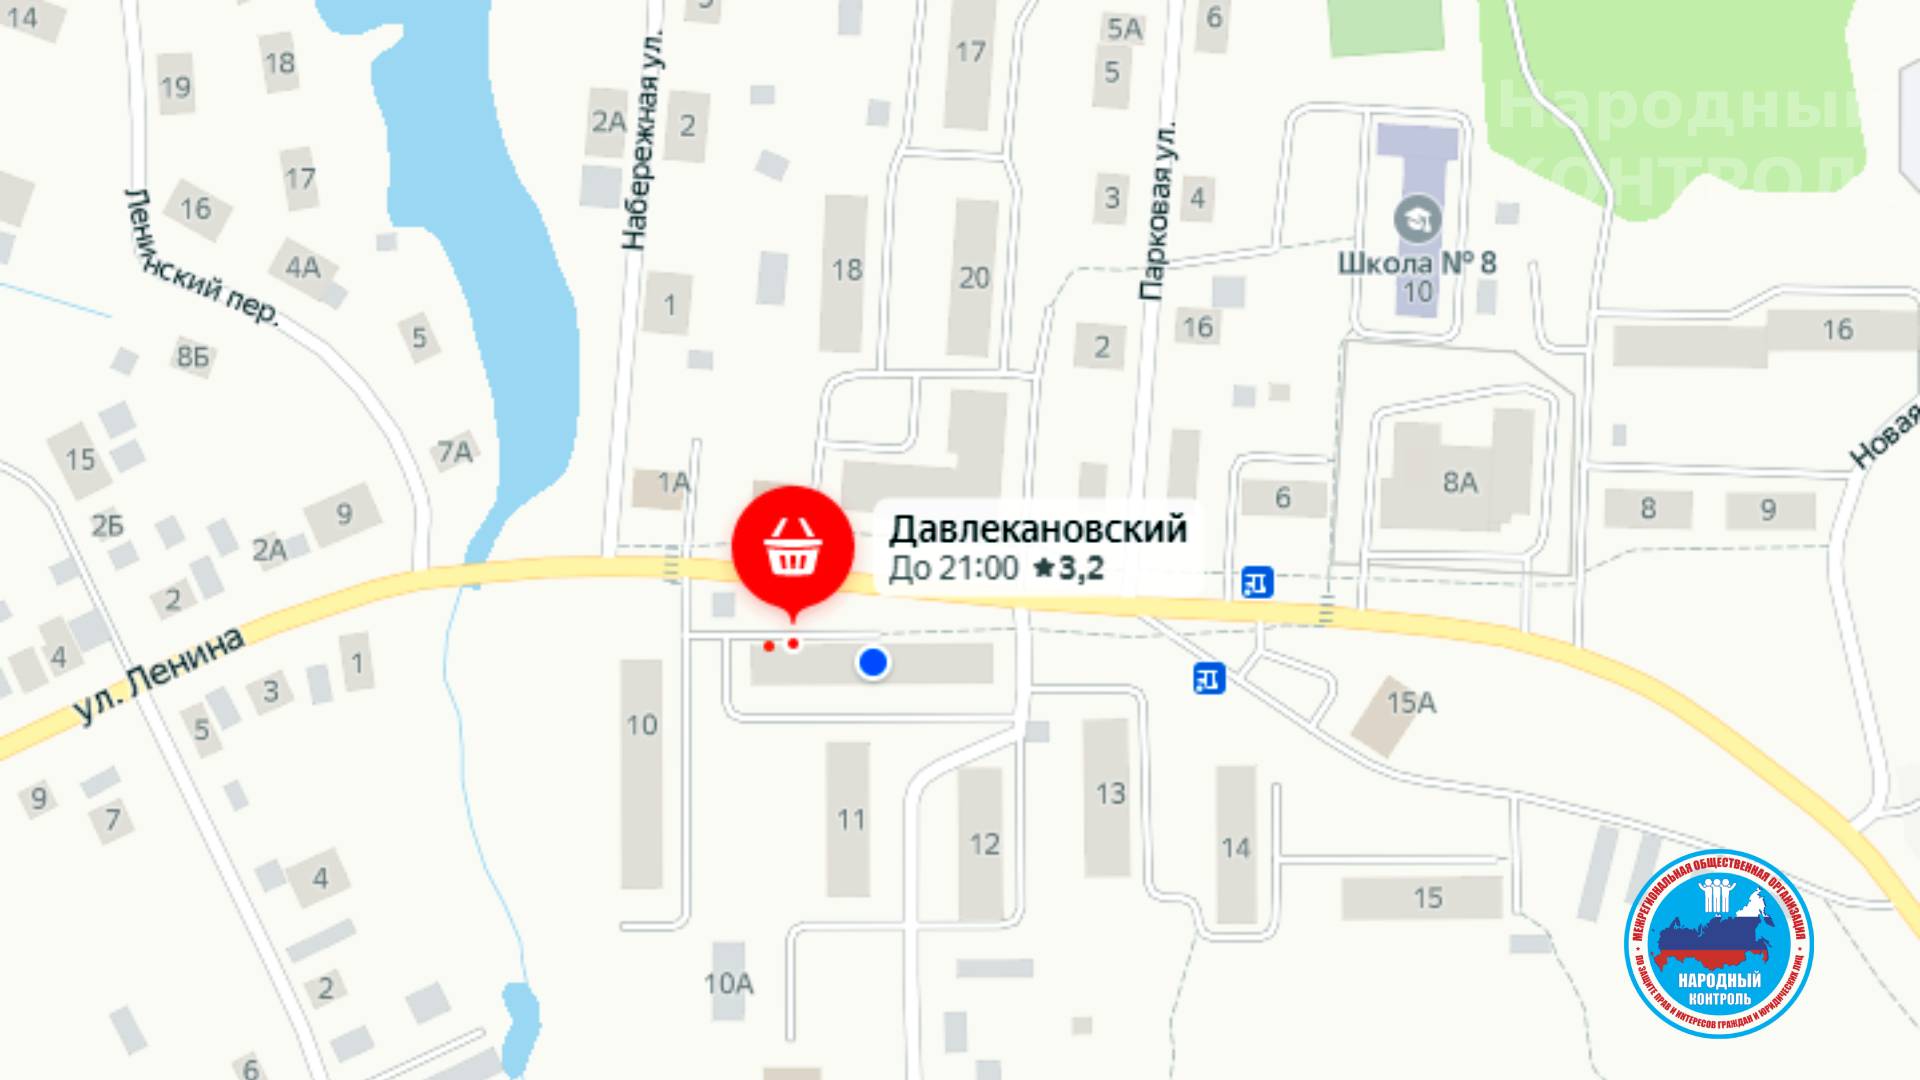 Сообщение о нарушениях в магазине Давлекановский в Березовском